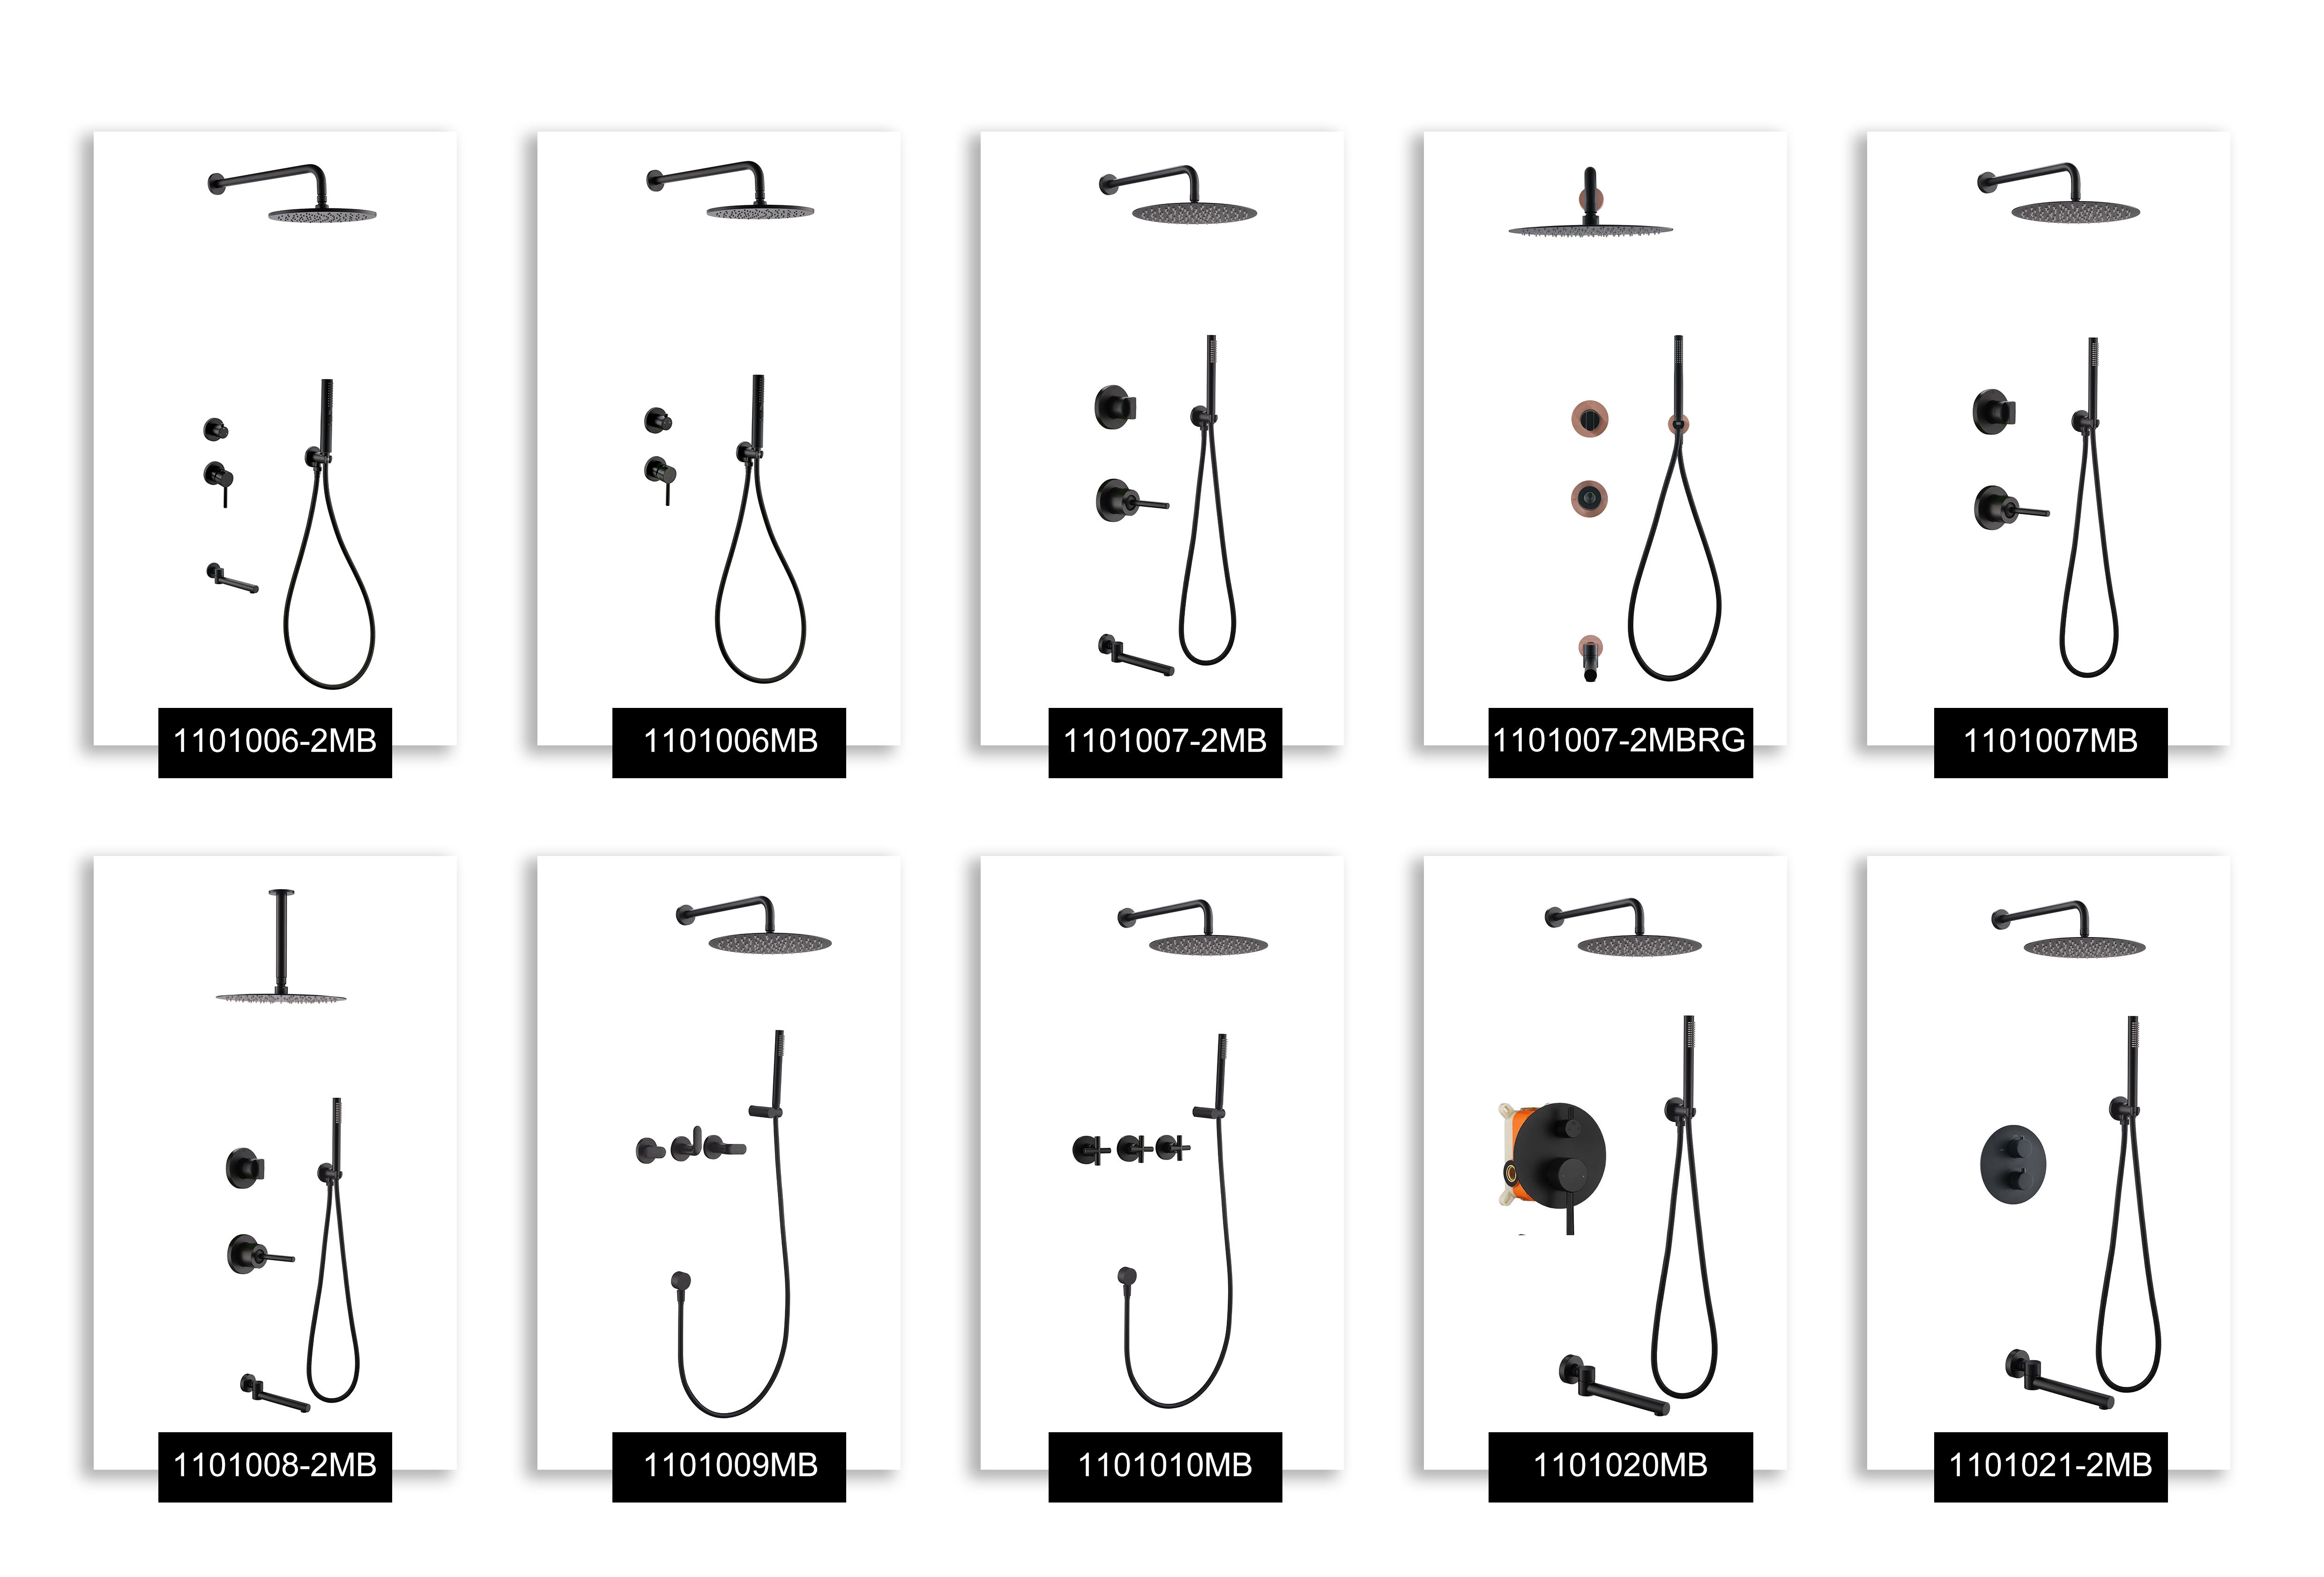 Matte Black Shower Faucet Set 3-Way Valve Rain Shower Head Mixer Tap